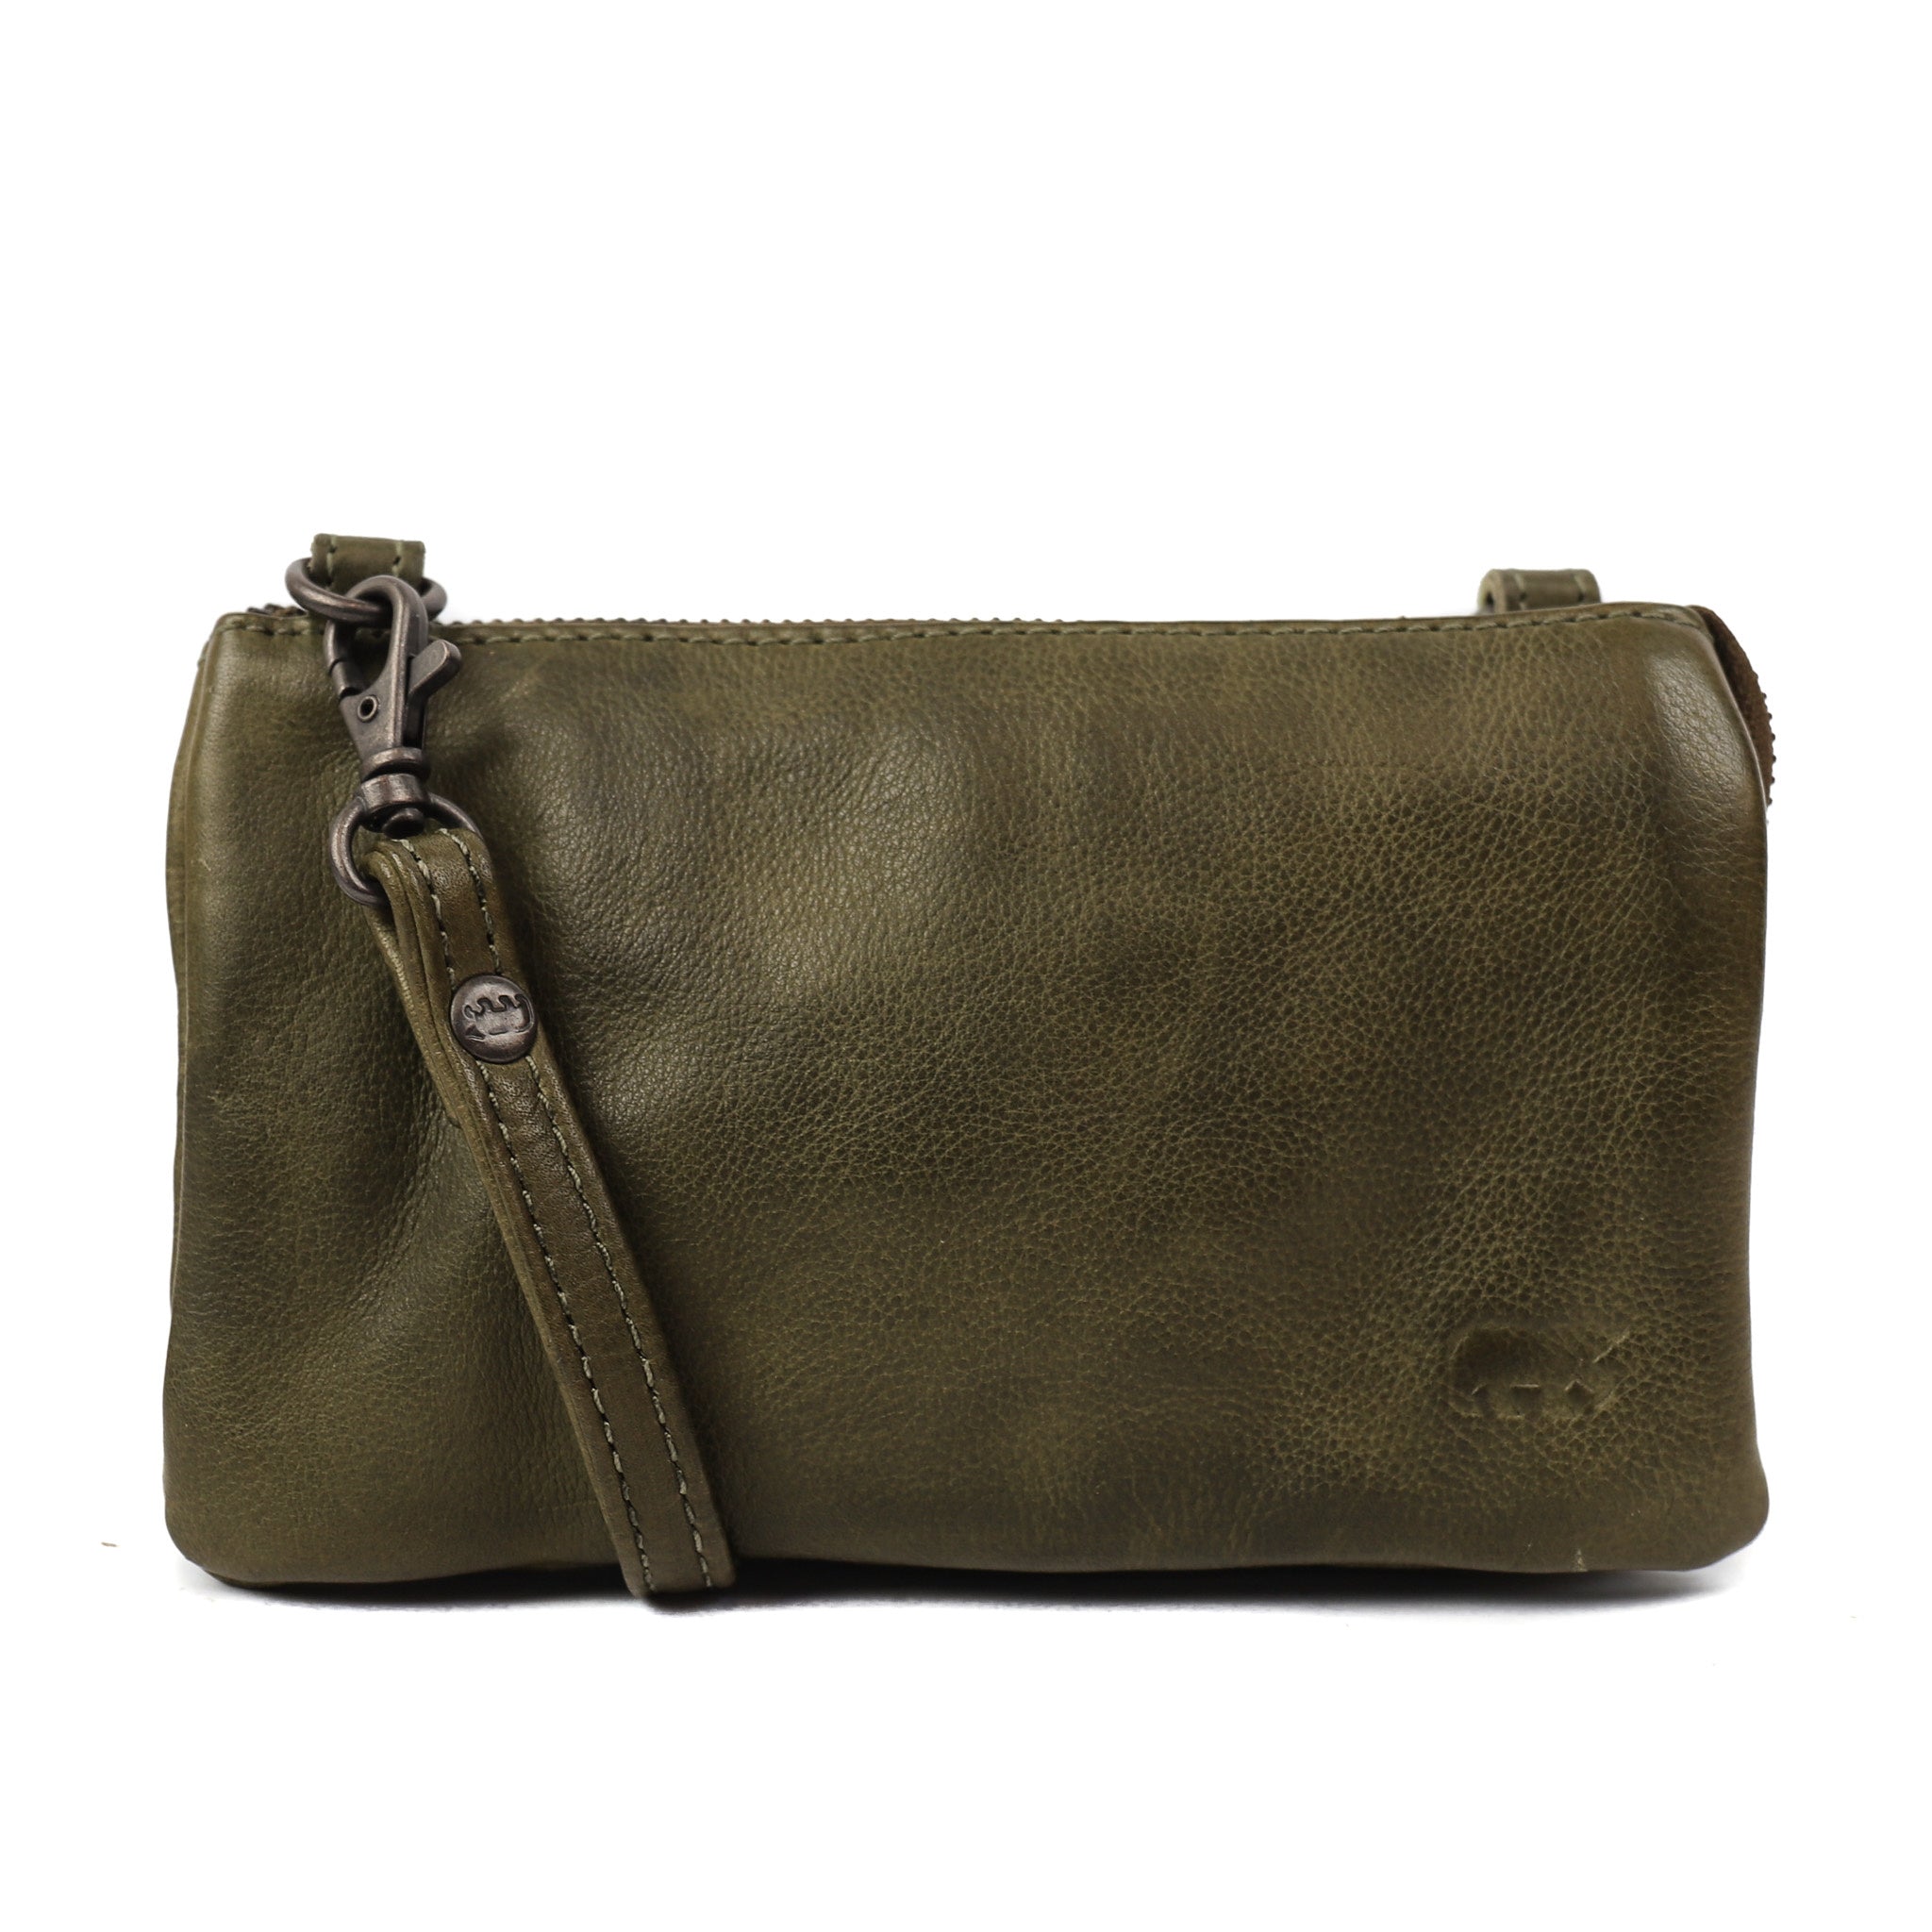 Purse bag 'Umi' green - CP 1493